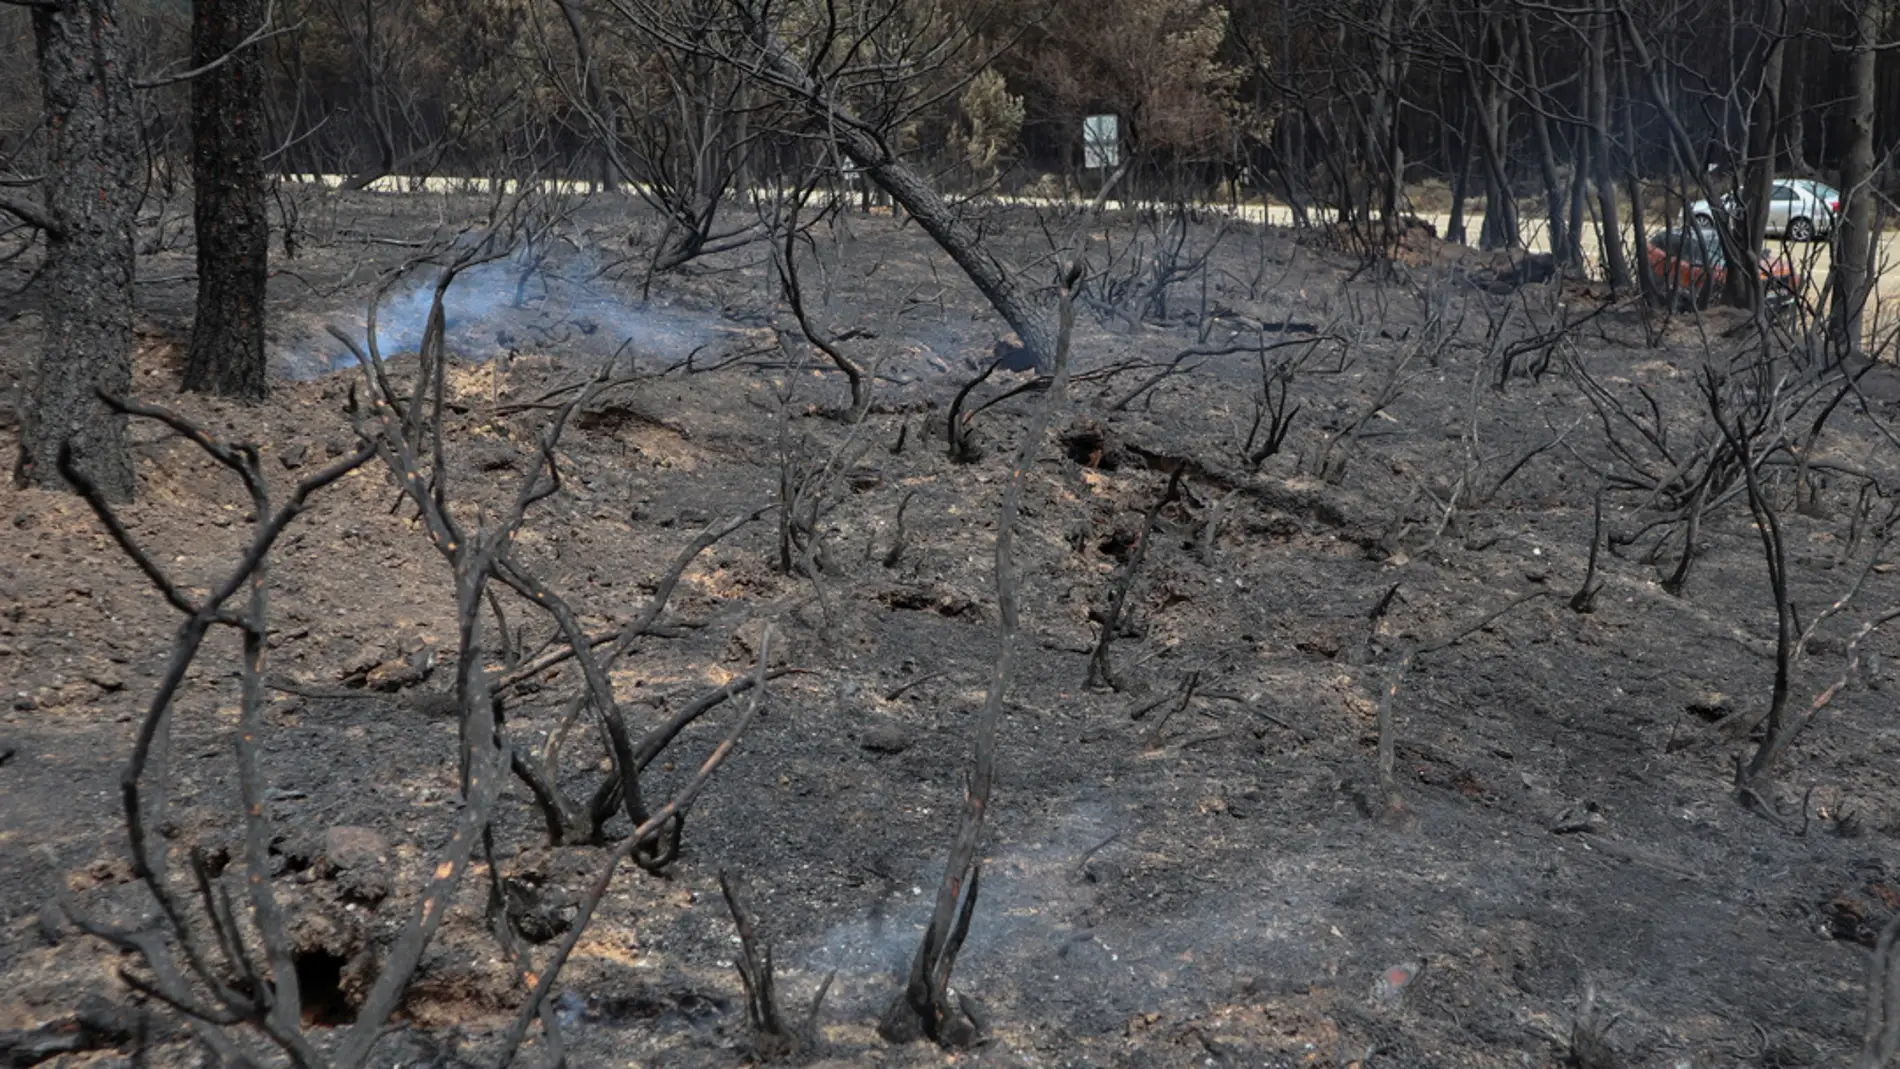 Vista de la zona afectada por el incendio forestal declarado en la Sierra de la Culebra, en la provincia de Zamora, que ha calcinado 30.800 hectáreas